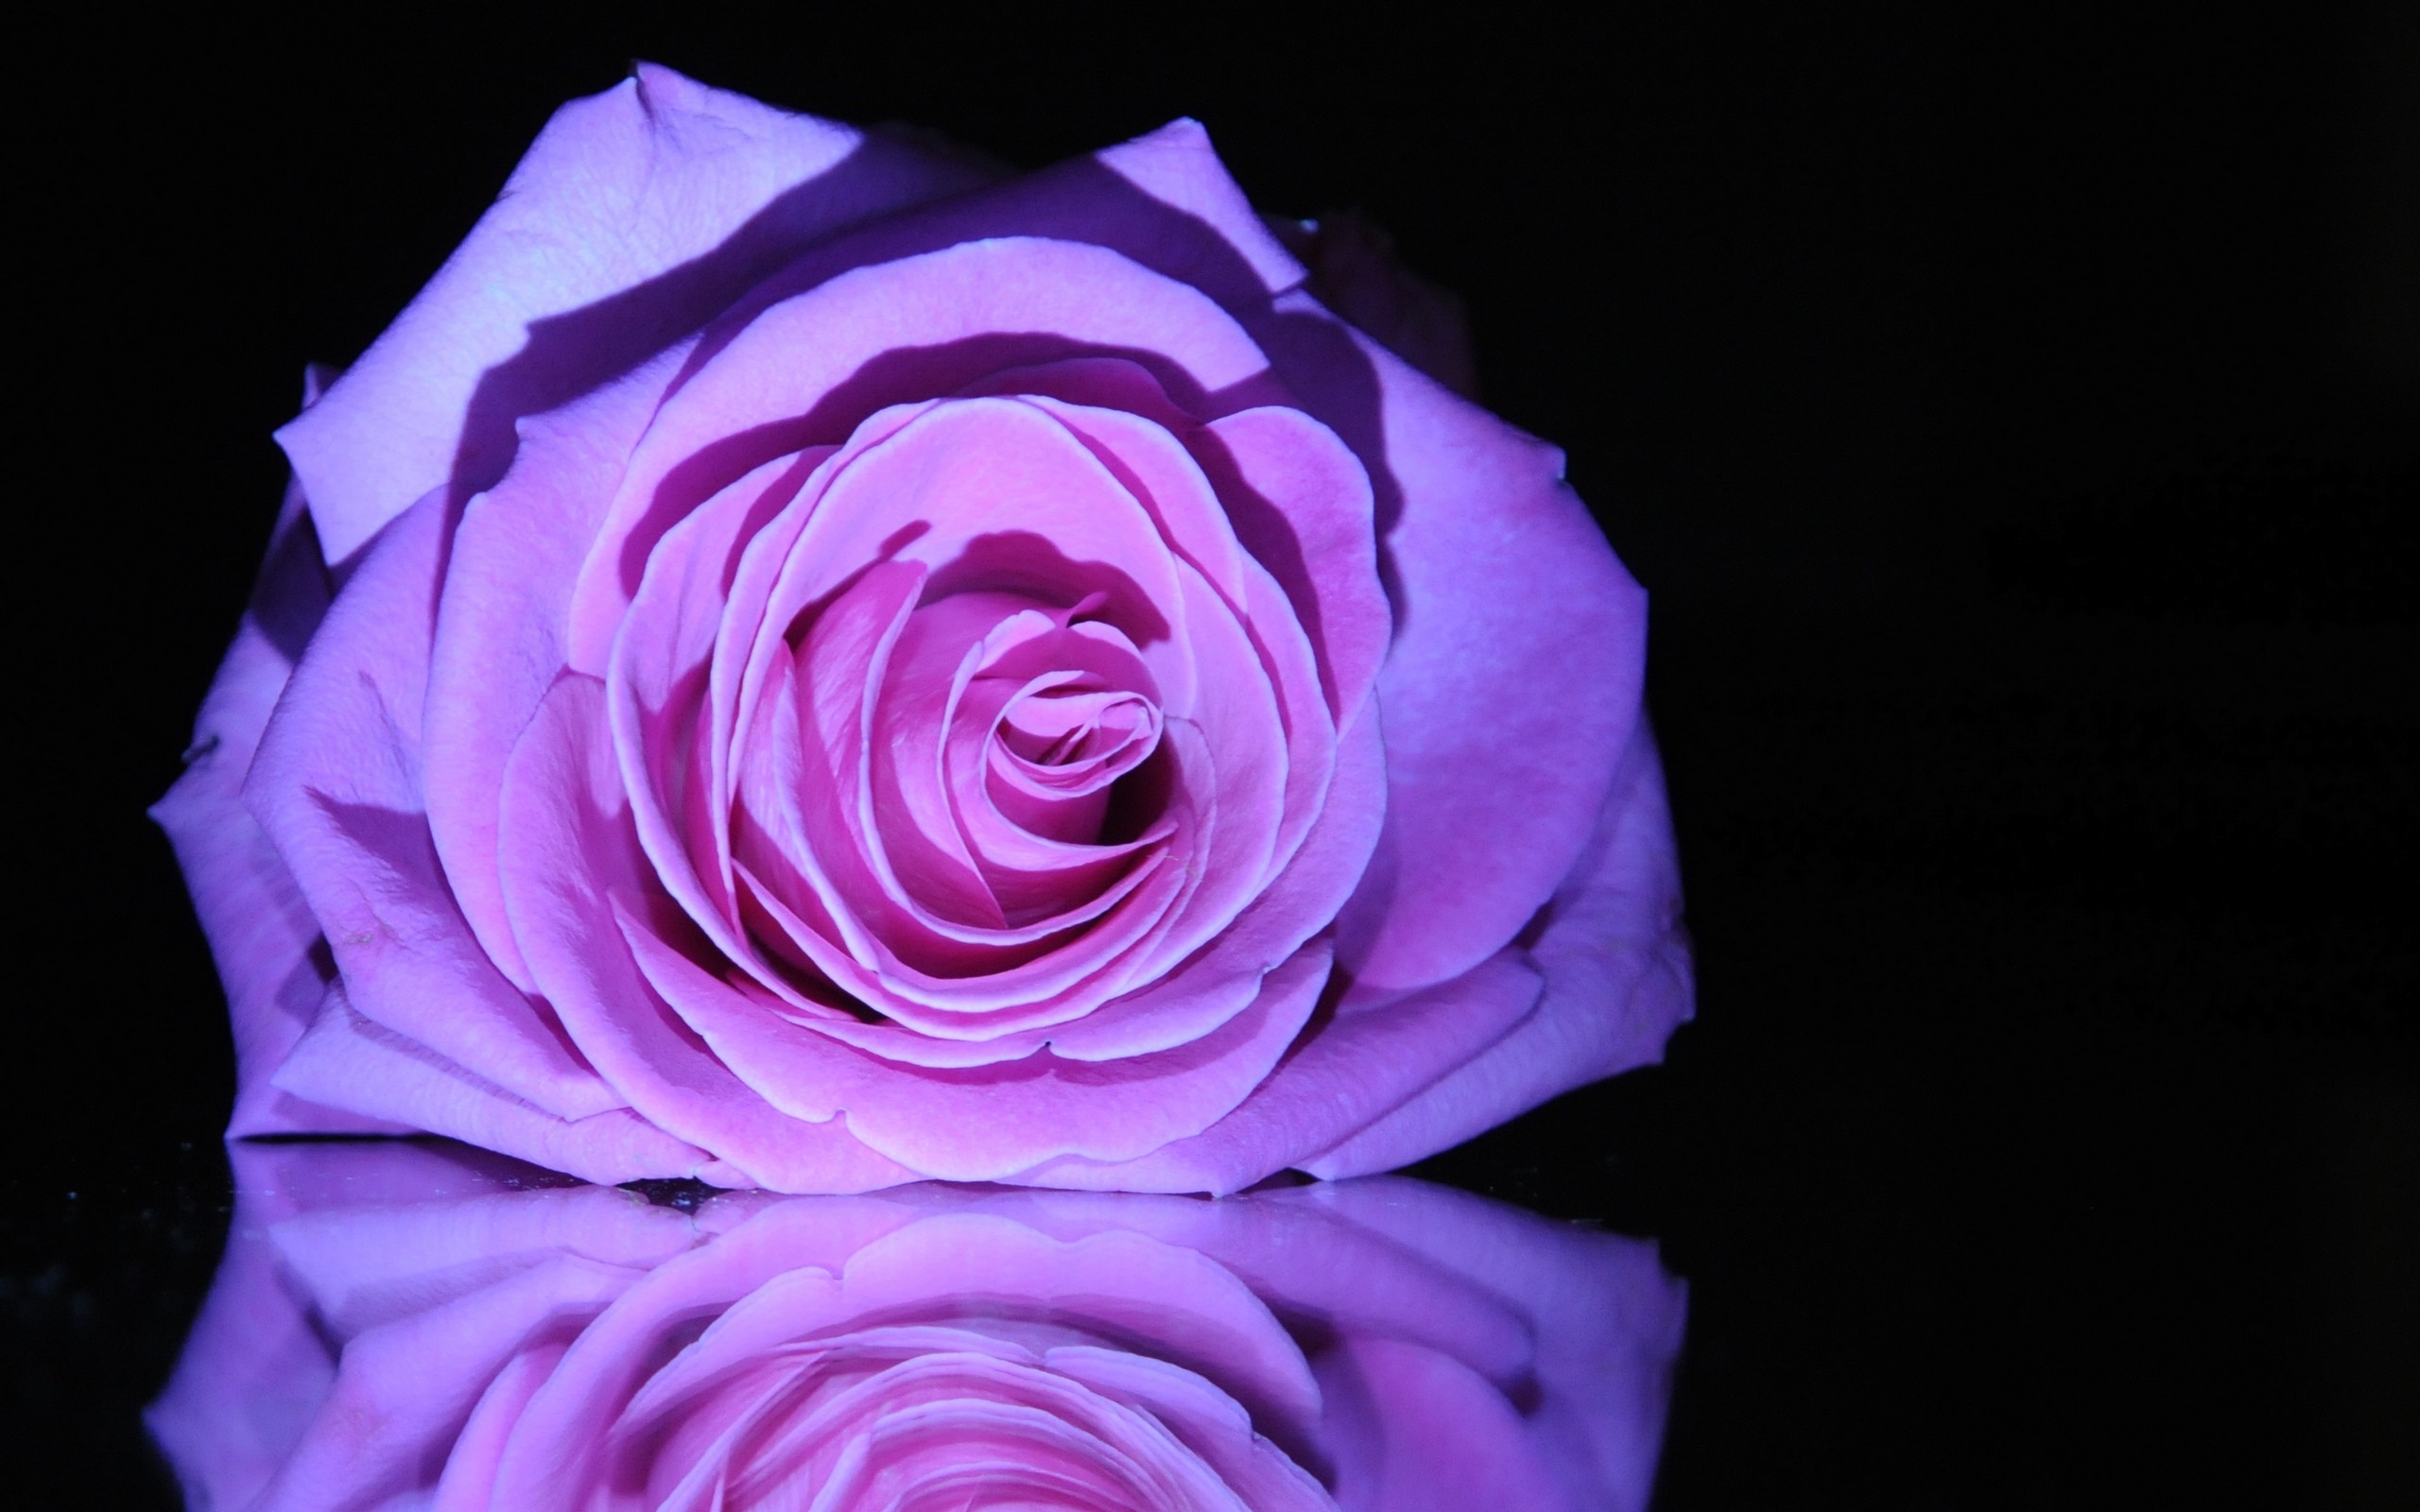 Dark Purple Rose Images  Free Download on Freepik